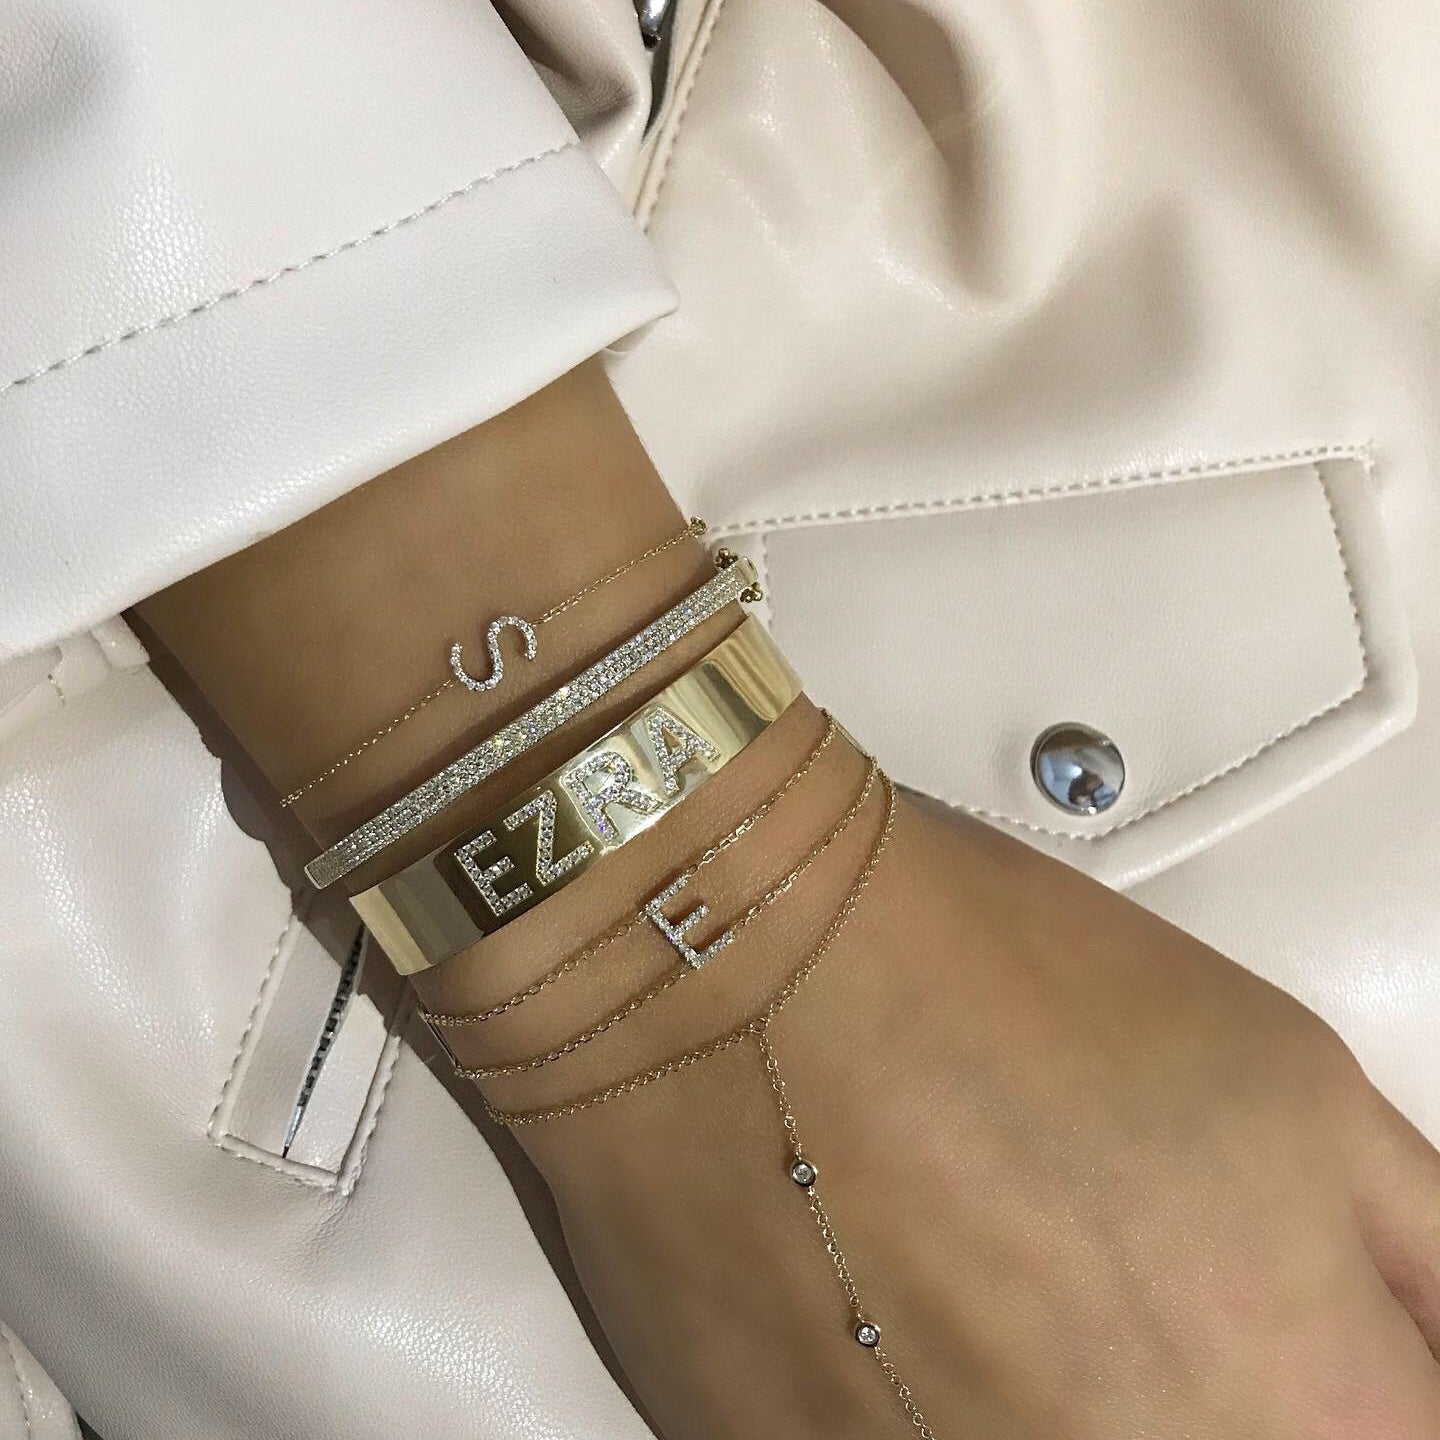 Double Chain Diamond Initial Bracelet – 770 Fine Jewelry